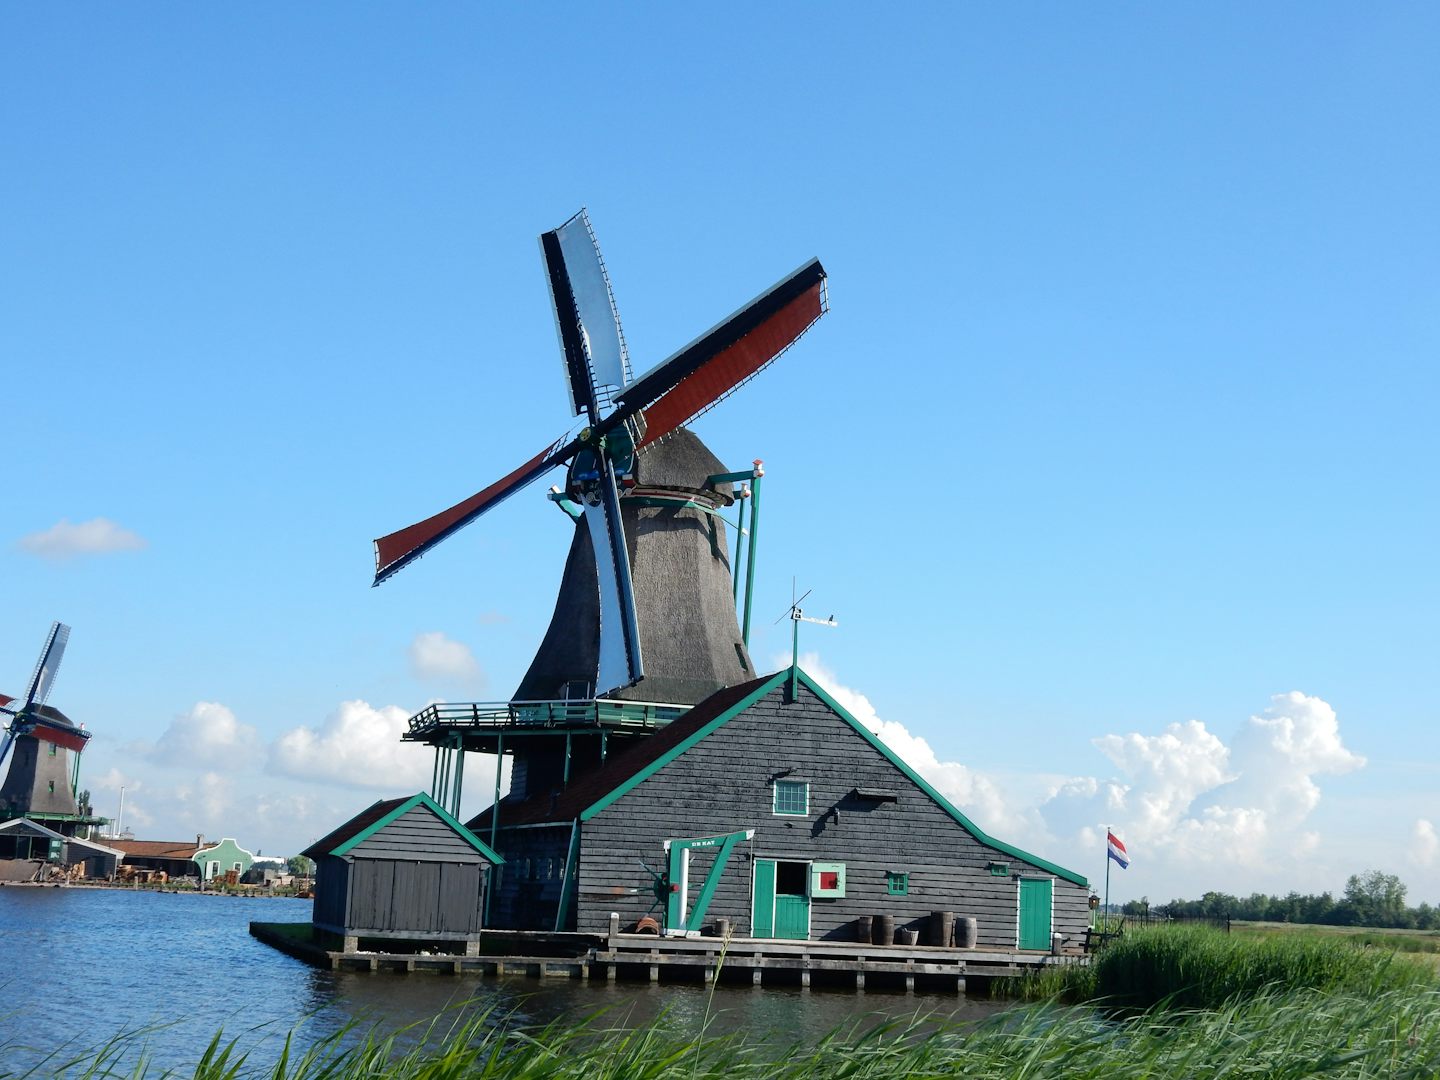 A windmill at Zaanse Schans, Amsterdam.